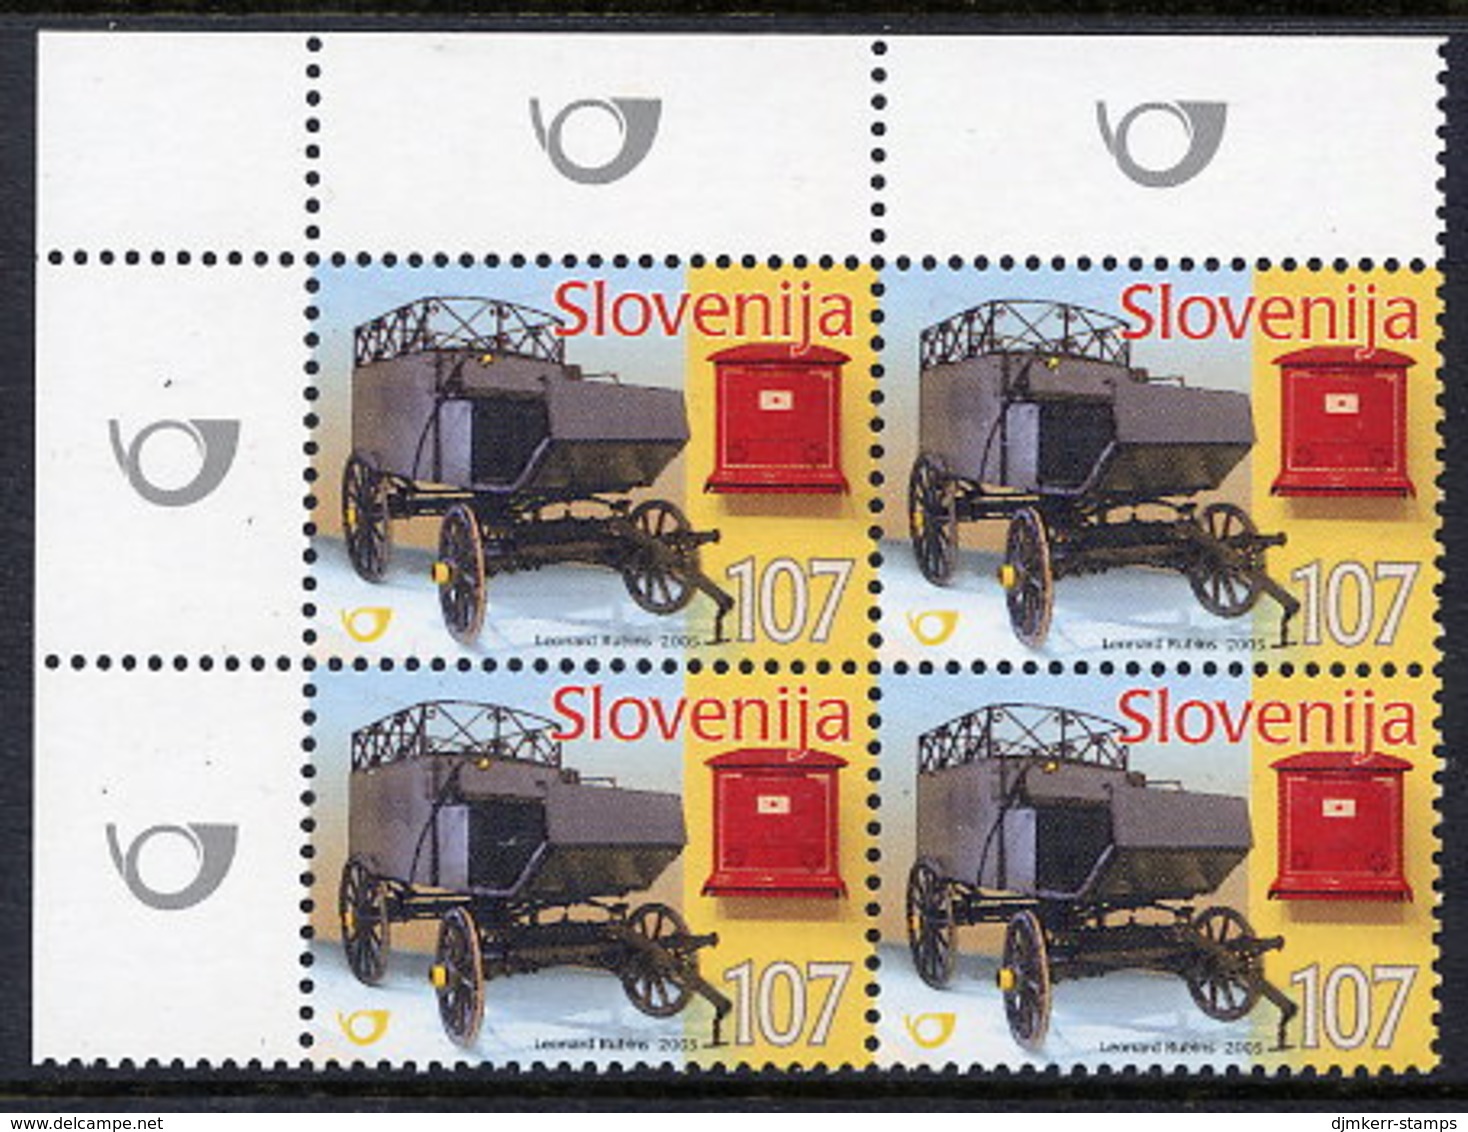 SLOVENIA 2005 Postal Museum Block Of 4 MNH / **.  Michel 538 - Slovenië